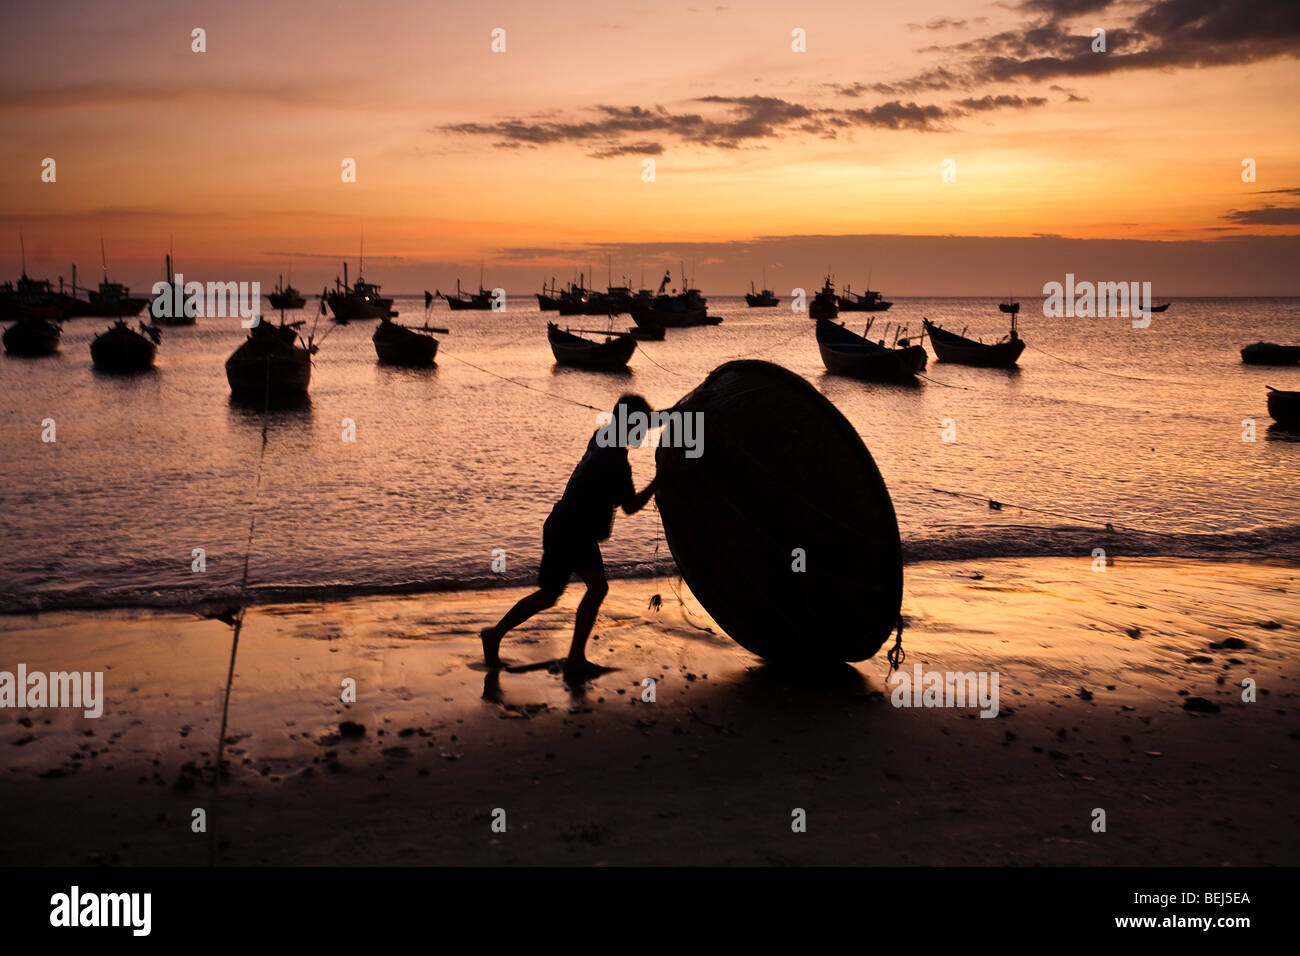 MUI NE, VIETNAM : Silhouette d'un homme roulant un bateau rond traditionnel vietnamien sur la plage au coucher du soleil. Mui Ne, Vietnam Banque D'Images